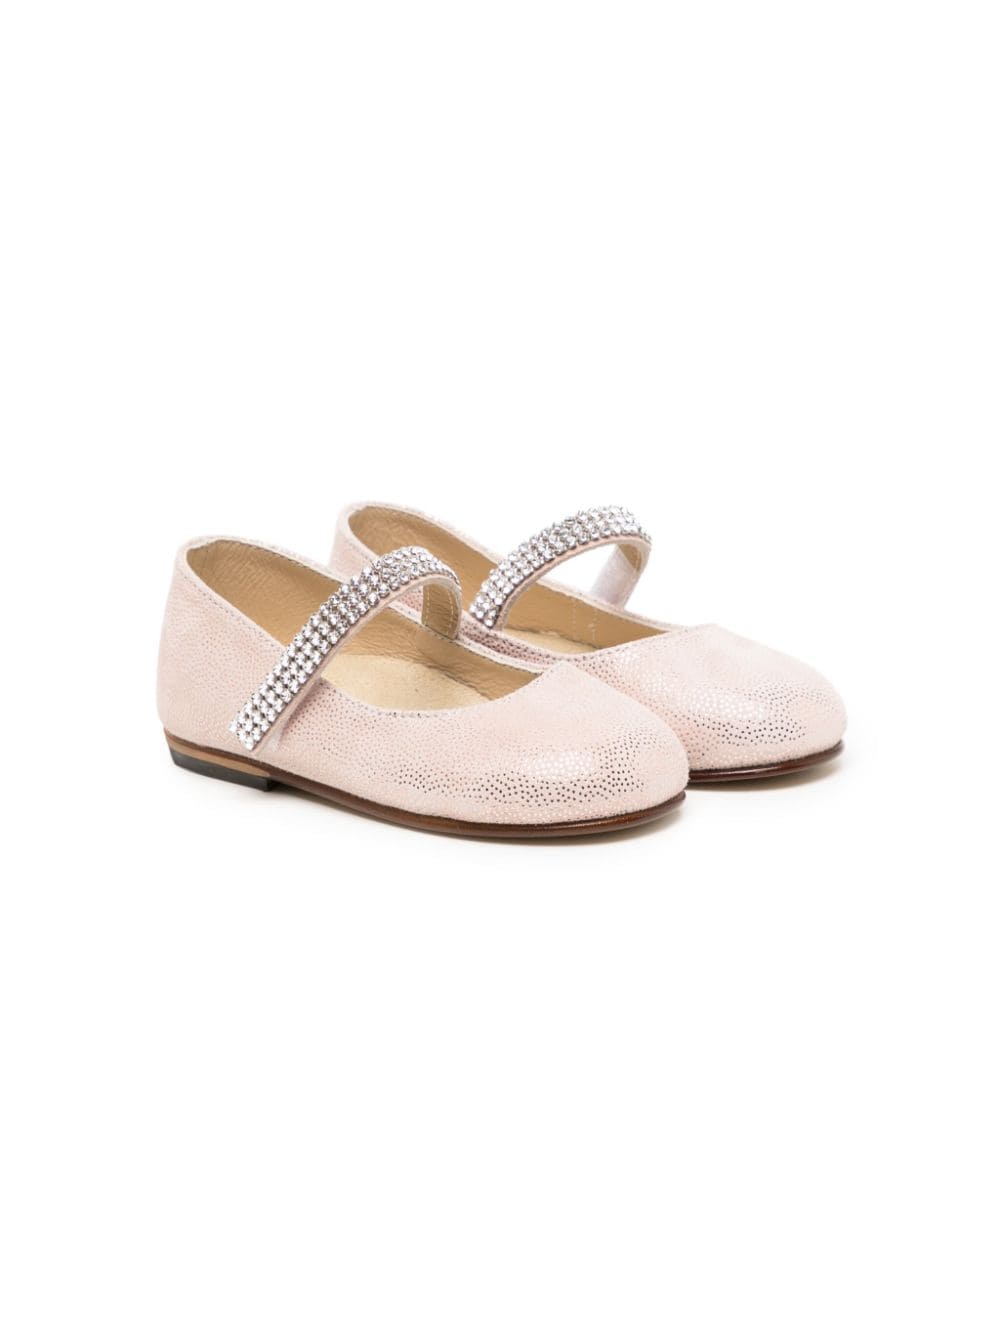 BabyWalker crystal-embellished leather ballerina shoes - Pink von BabyWalker